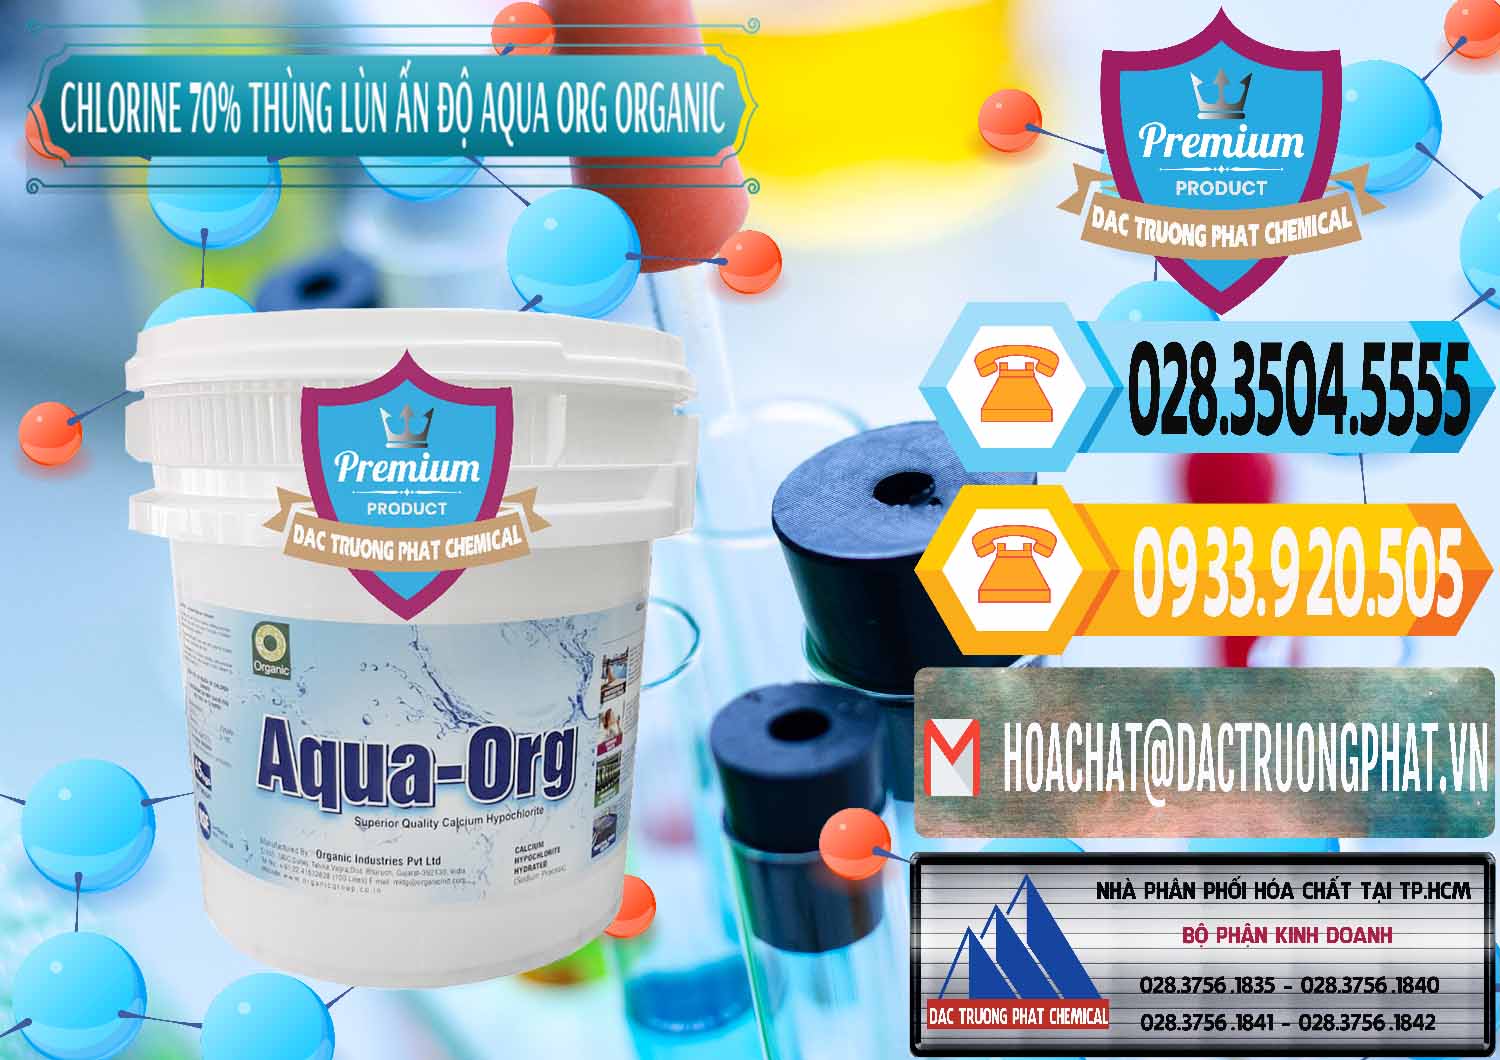 Cty cung ứng _ bán Chlorine – Clorin 70% Thùng Lùn Ấn Độ Aqua ORG Organic India - 0212 - Cty chuyên nhập khẩu và phân phối hóa chất tại TP.HCM - hoachattayrua.net